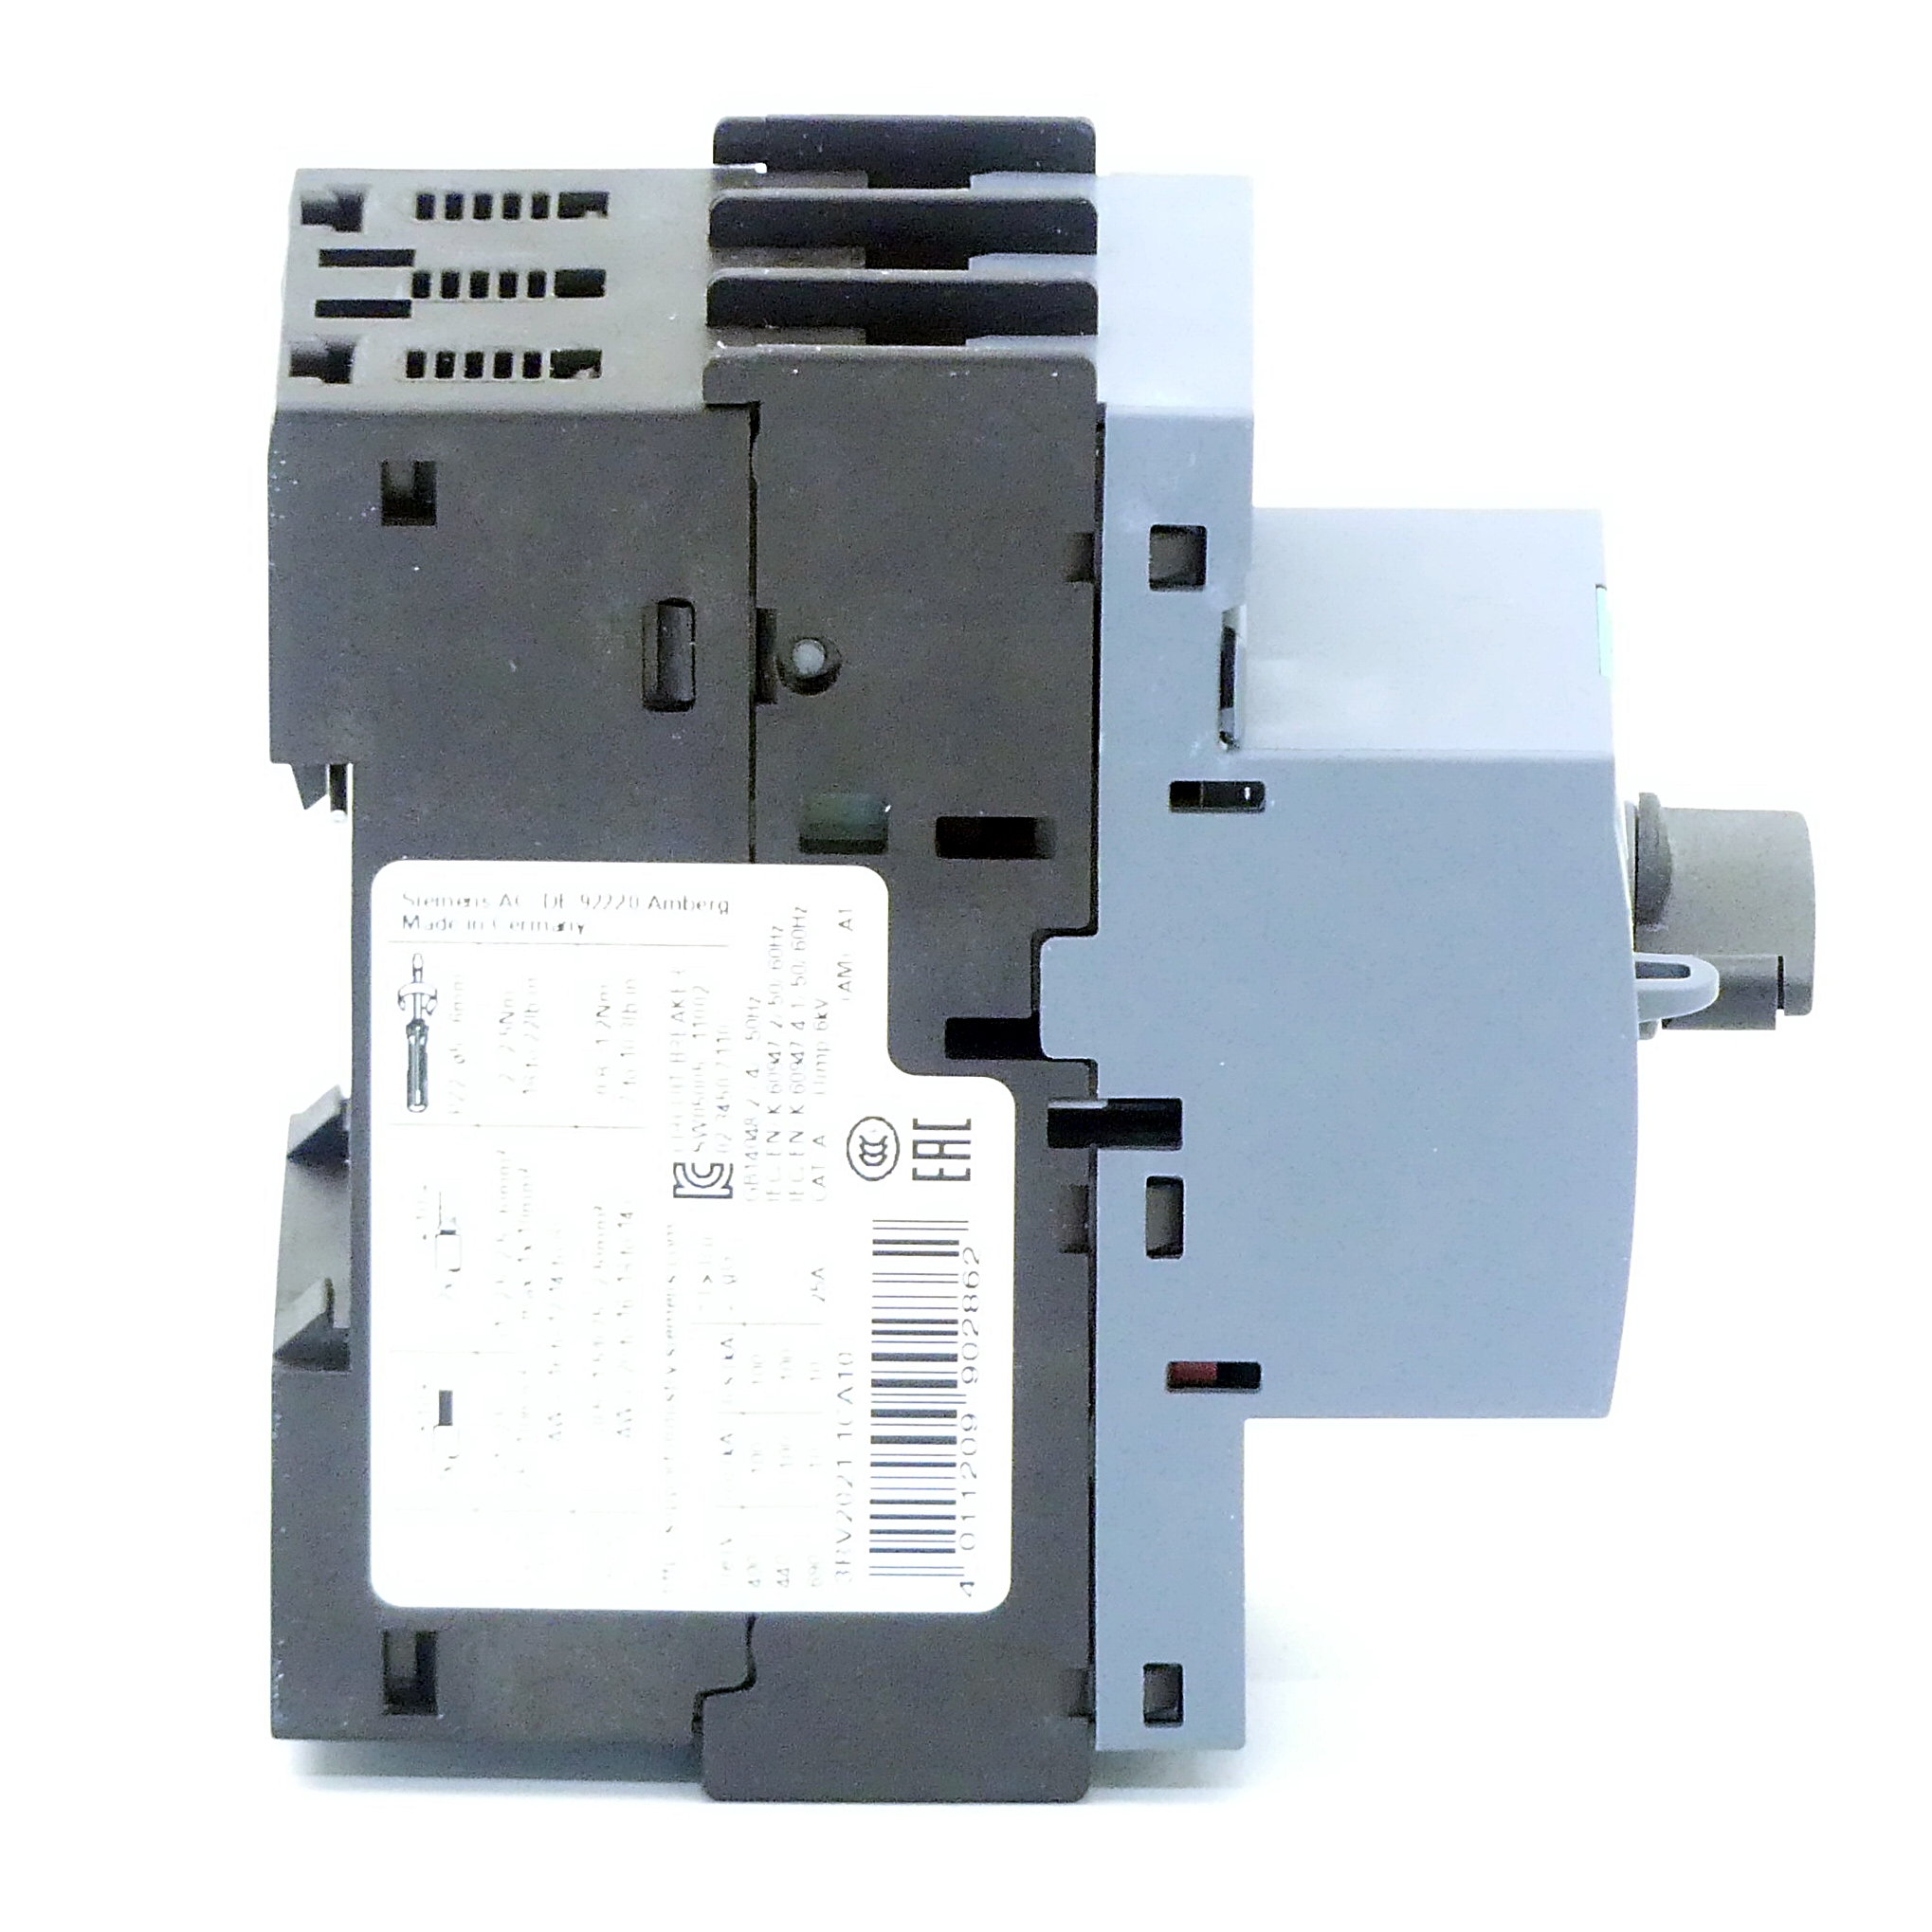 Leistungsschalter 3RV2021-1CA10 